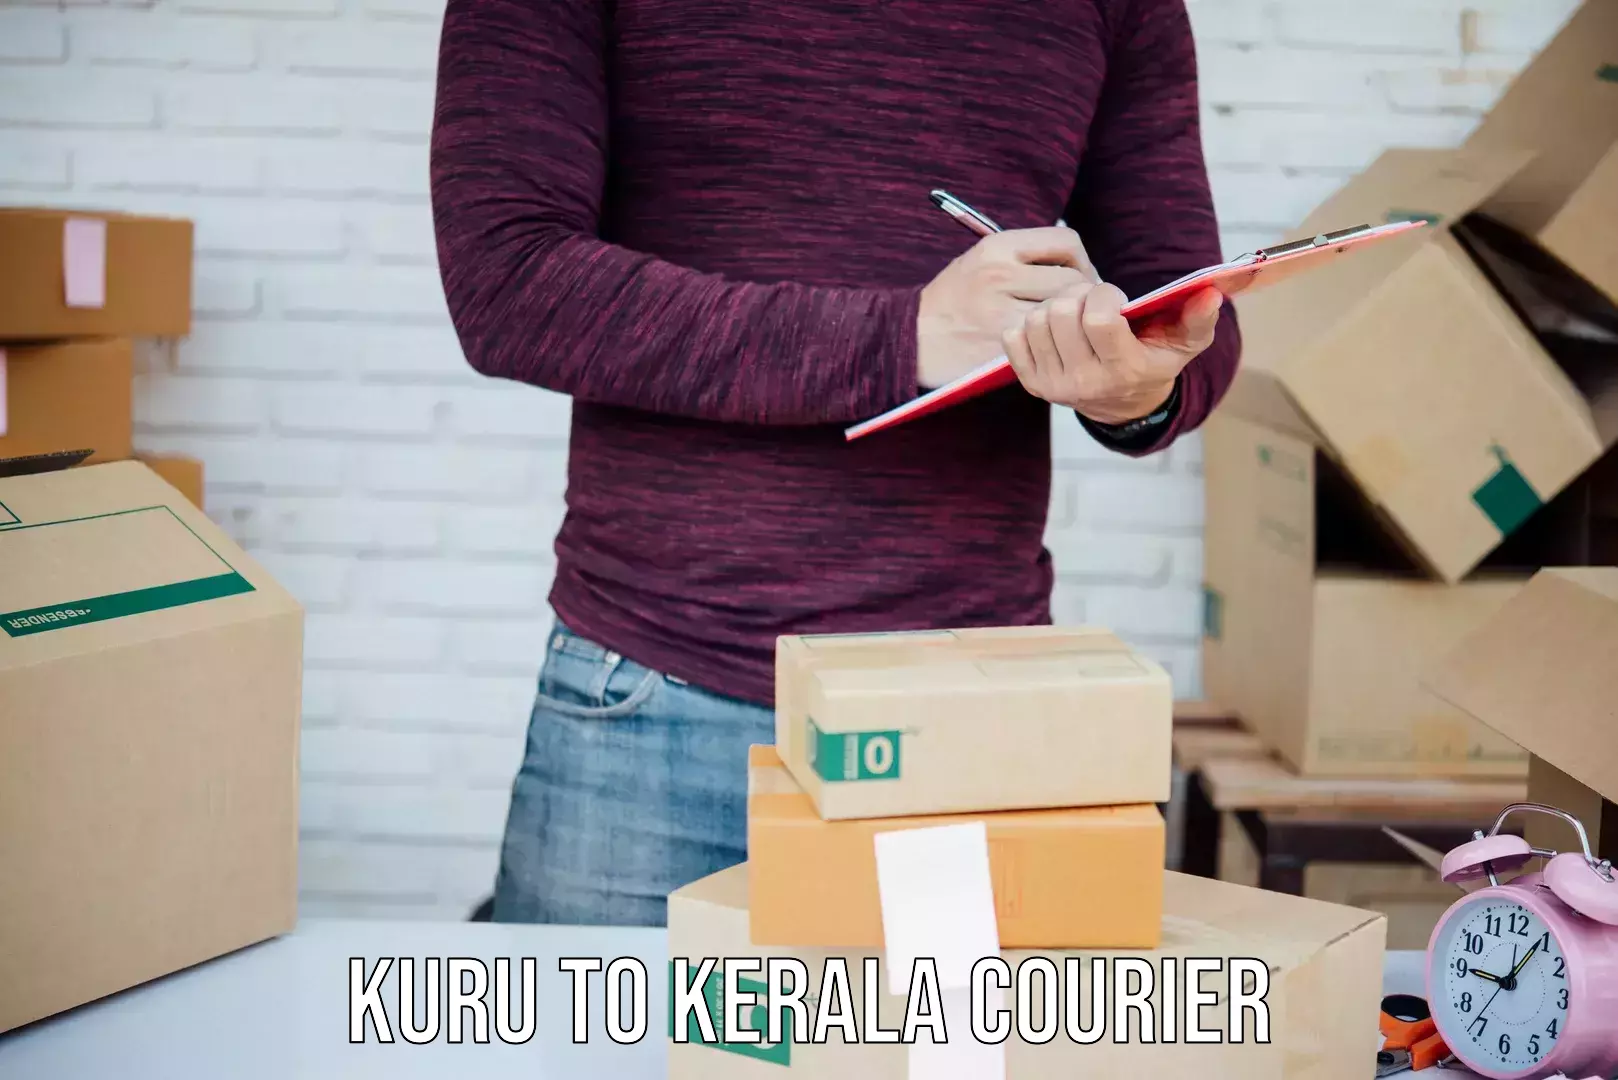 Efficient cargo handling in Kuru to Kerala